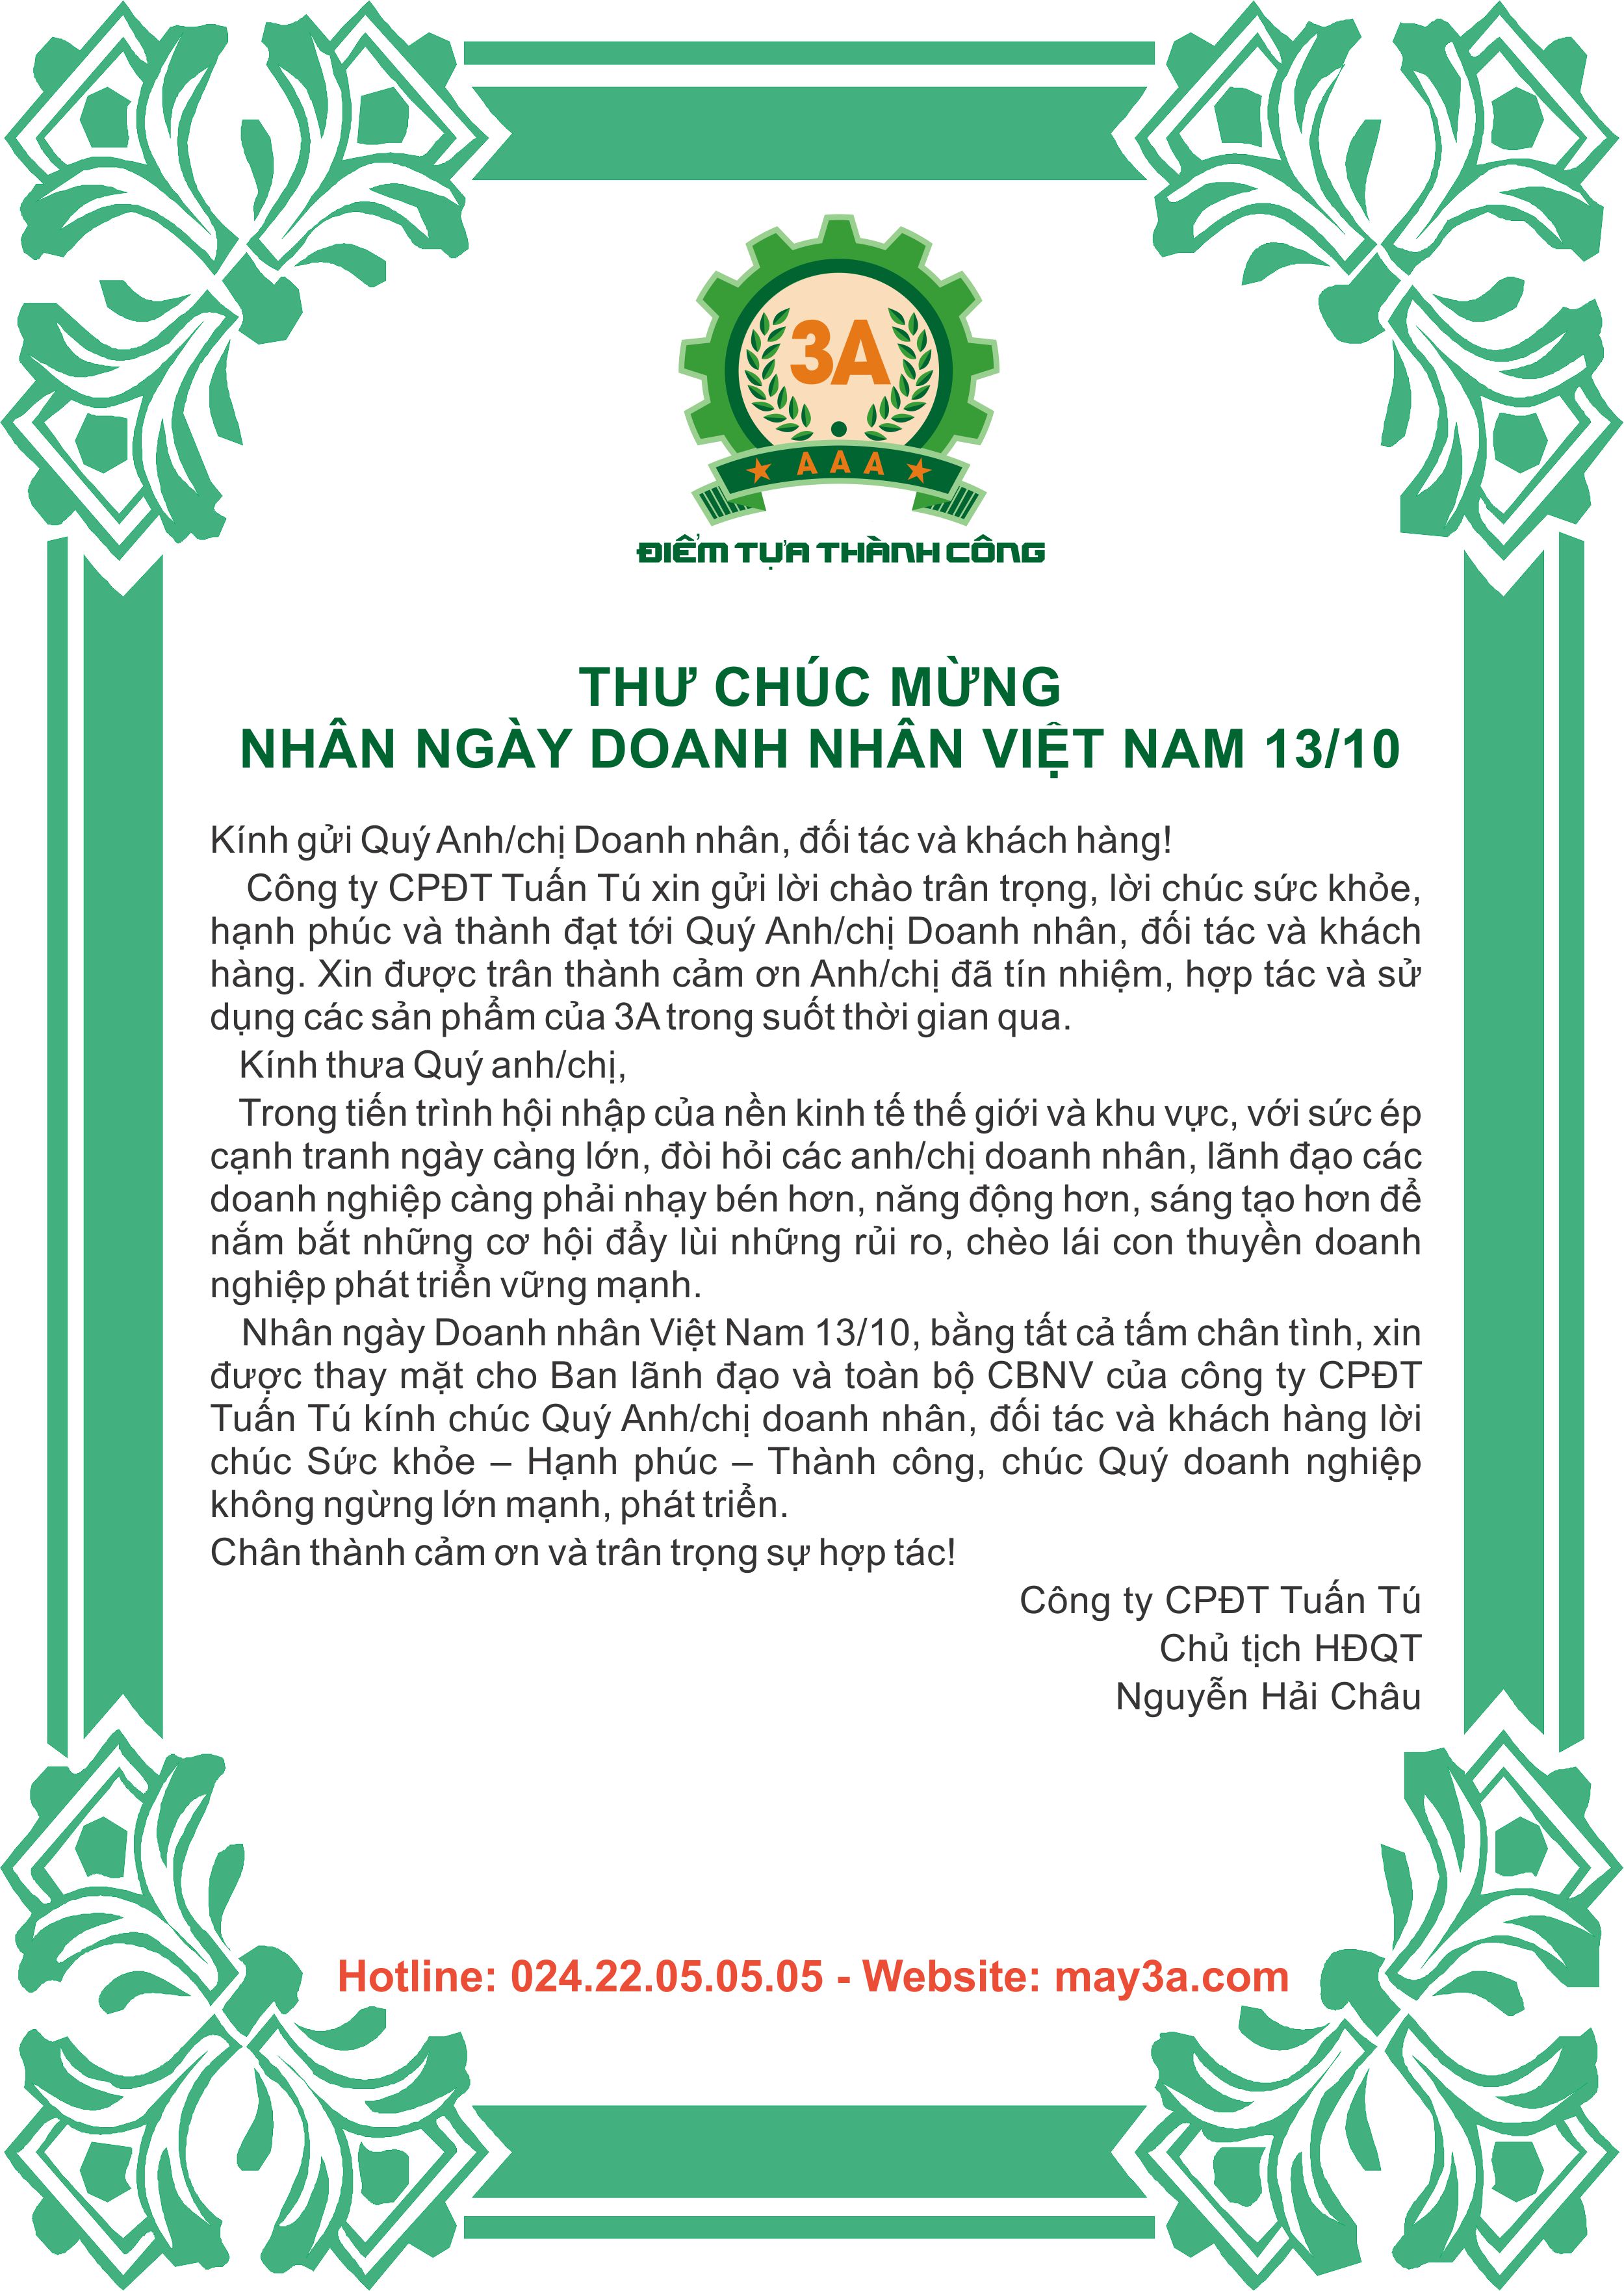 Thư chúc mừng ngày doanh nhân 13/10/2018 - Chủ tịch HĐQT Nguyễn Hải Châu